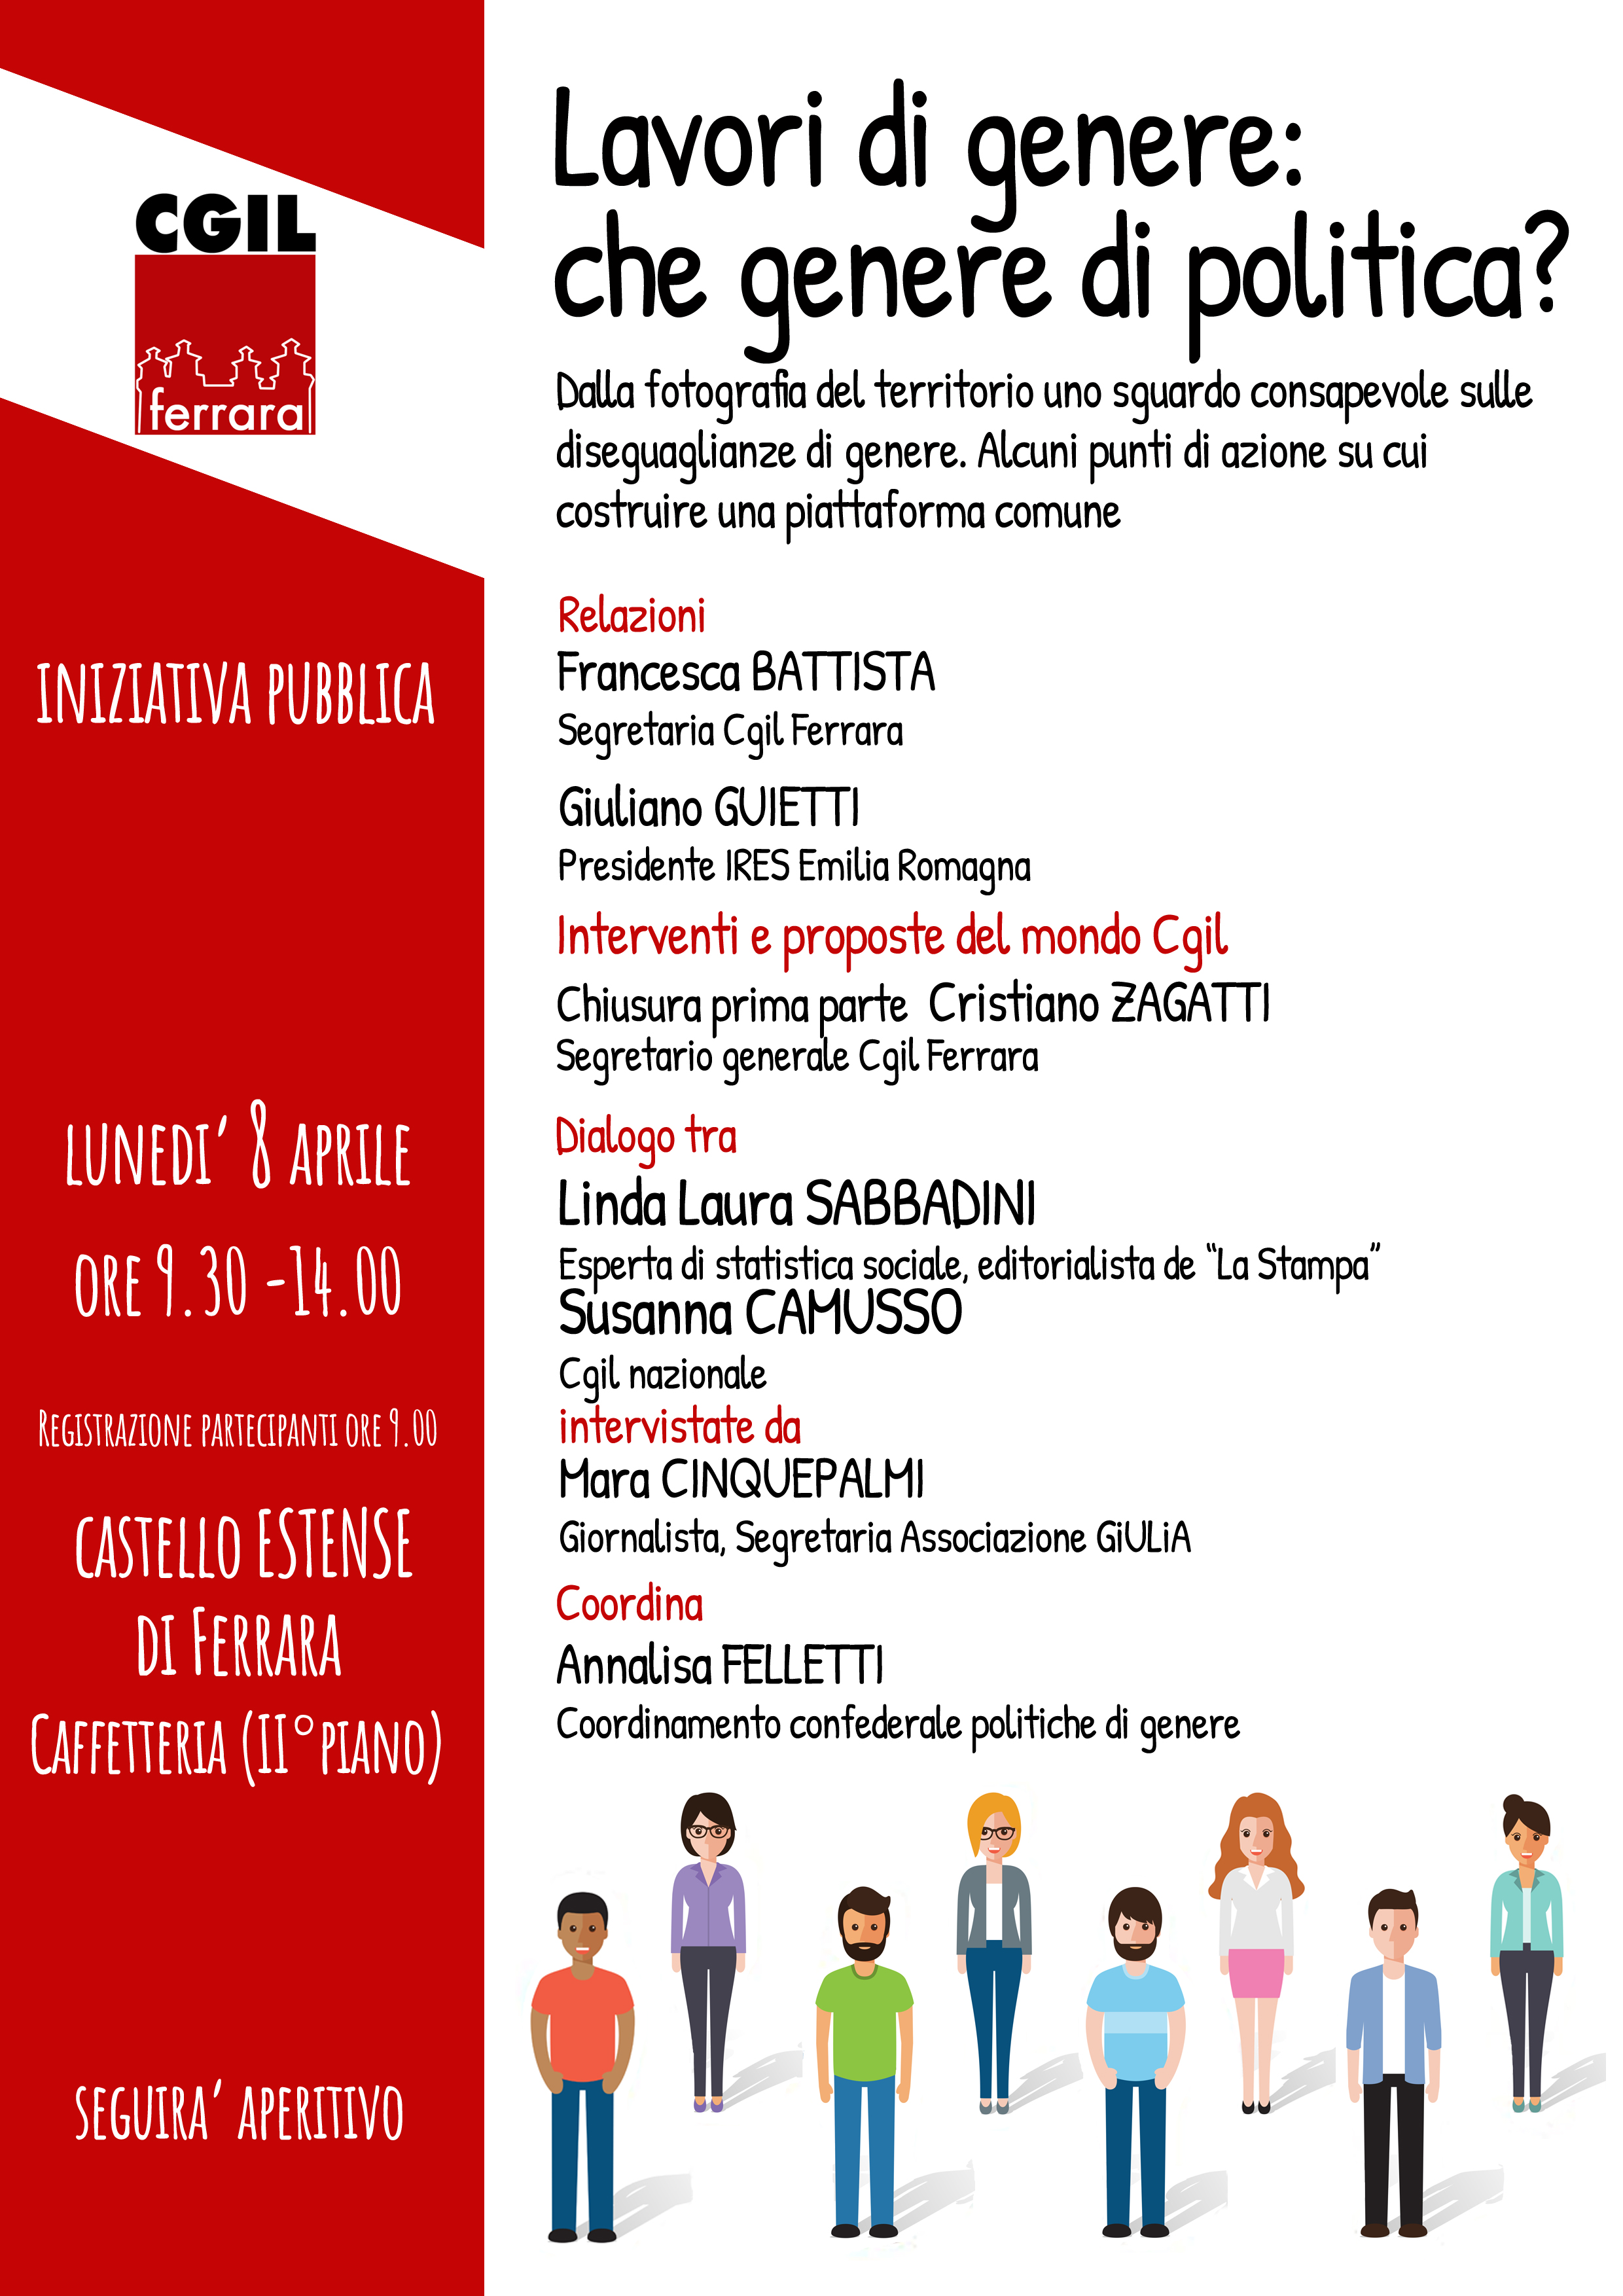 Lavori di genere: che genere di politica? Lunedì 8 aprile iniziativa pubblica in Castello Estense